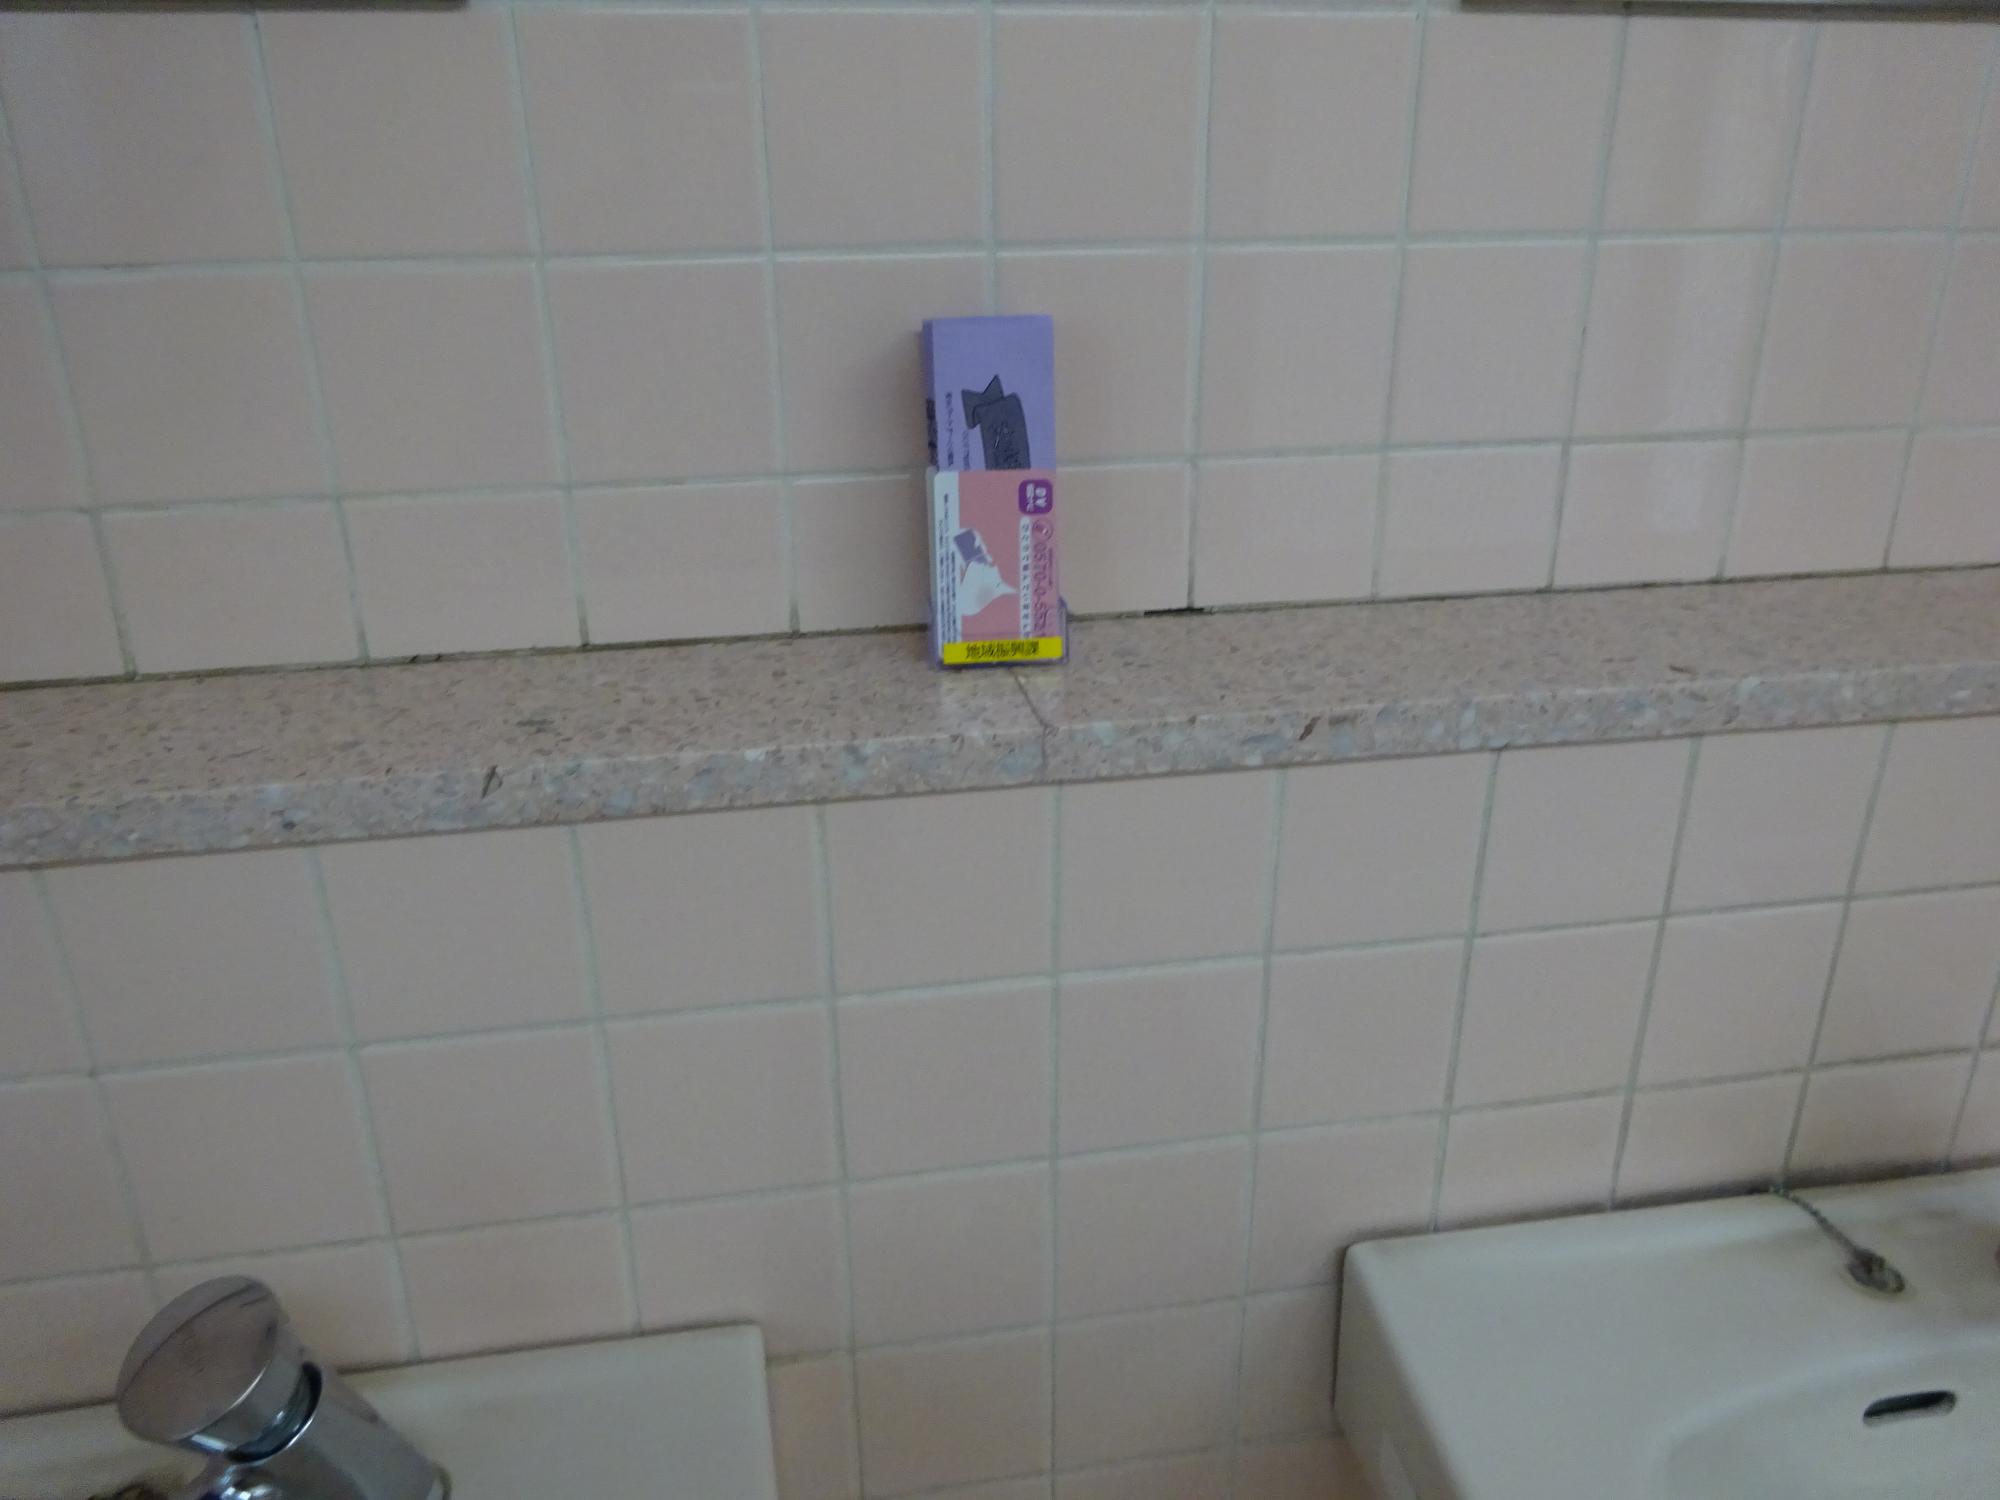 2つのシンクがある手洗い場の棚にDV相談ナビ啓発カードが置かれている写真